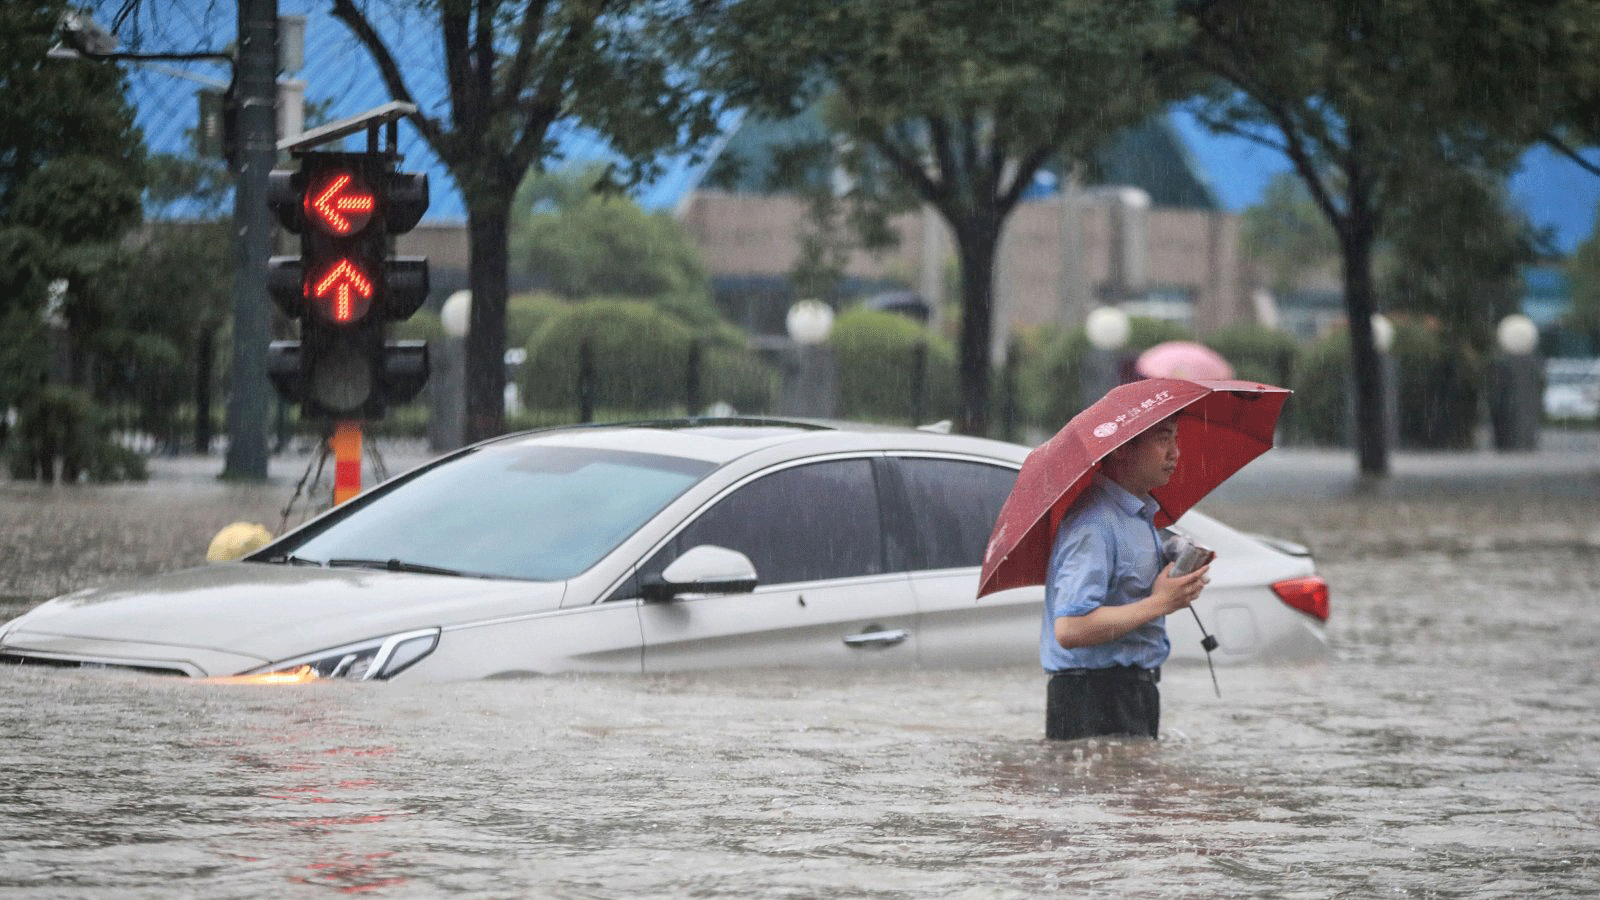 رجلٌ يمر أمام سيارة غارقة في شارع غمرته المياه بعد هطول أمطار غزيرة في مدينة تشنغتشو في الصين. 20 تموز/يوليو 2021